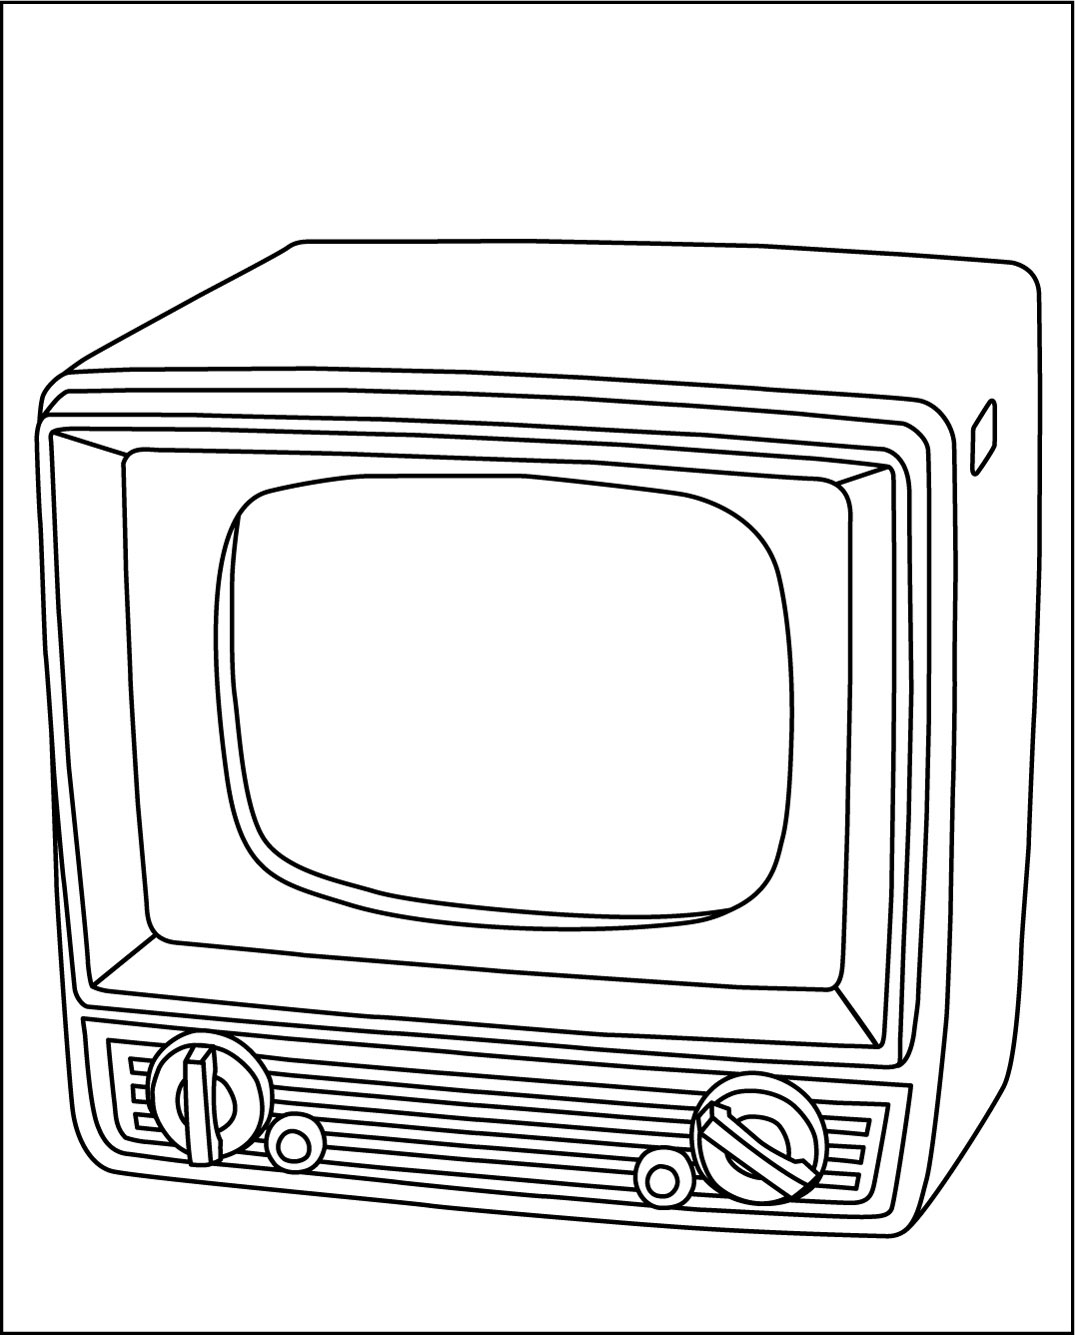 高齢者レク素材 白黒テレビ 昭和32年 モノクロ イラスト 介護レク広場 レク素材やレクネタ 企画書 の無料ダウンロード